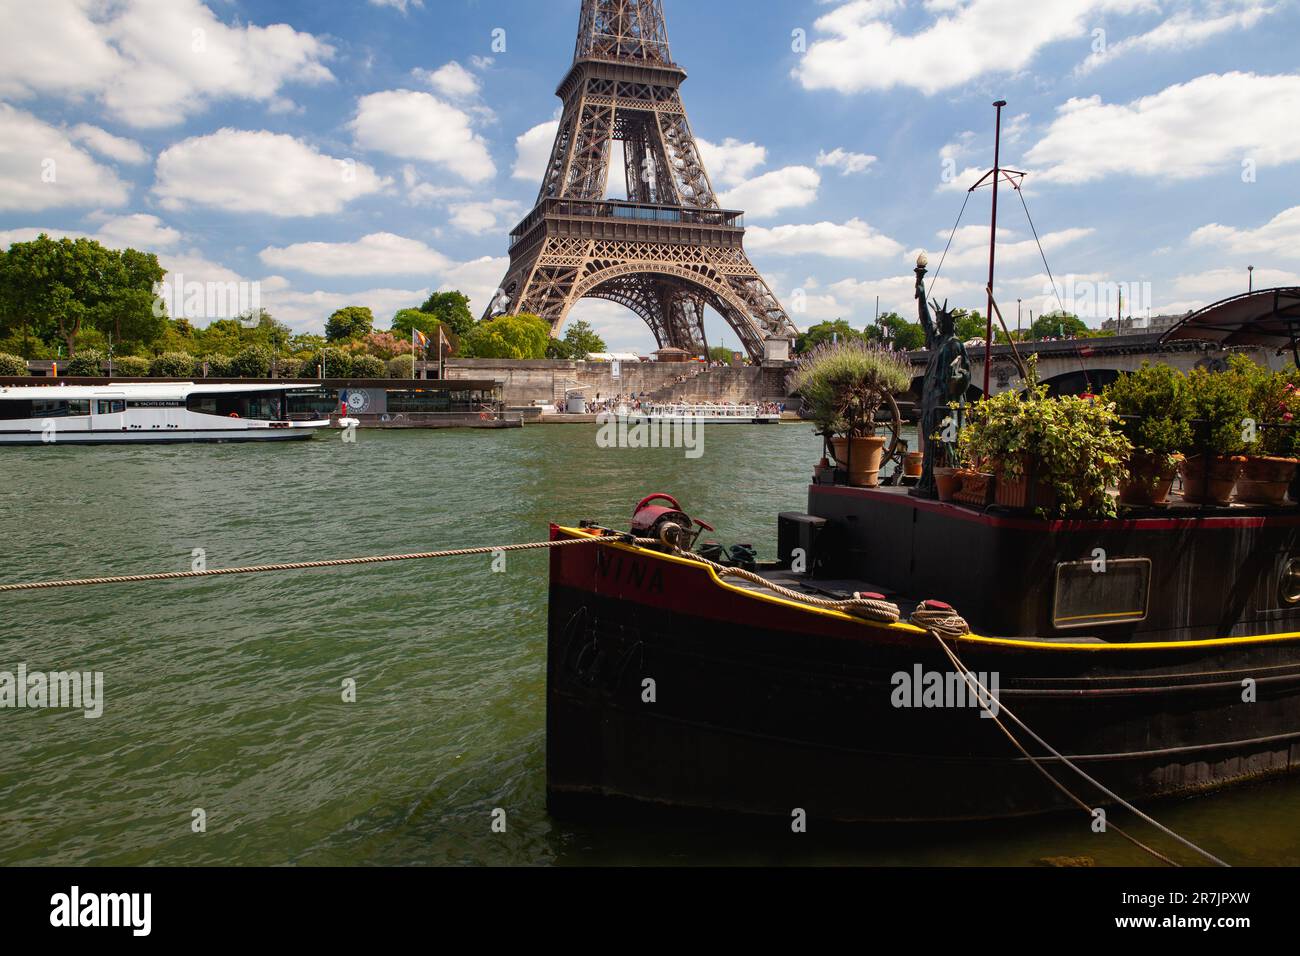 Une maison en bateau colorée typique sur la Seine et Eiffel Towe Banque D'Images